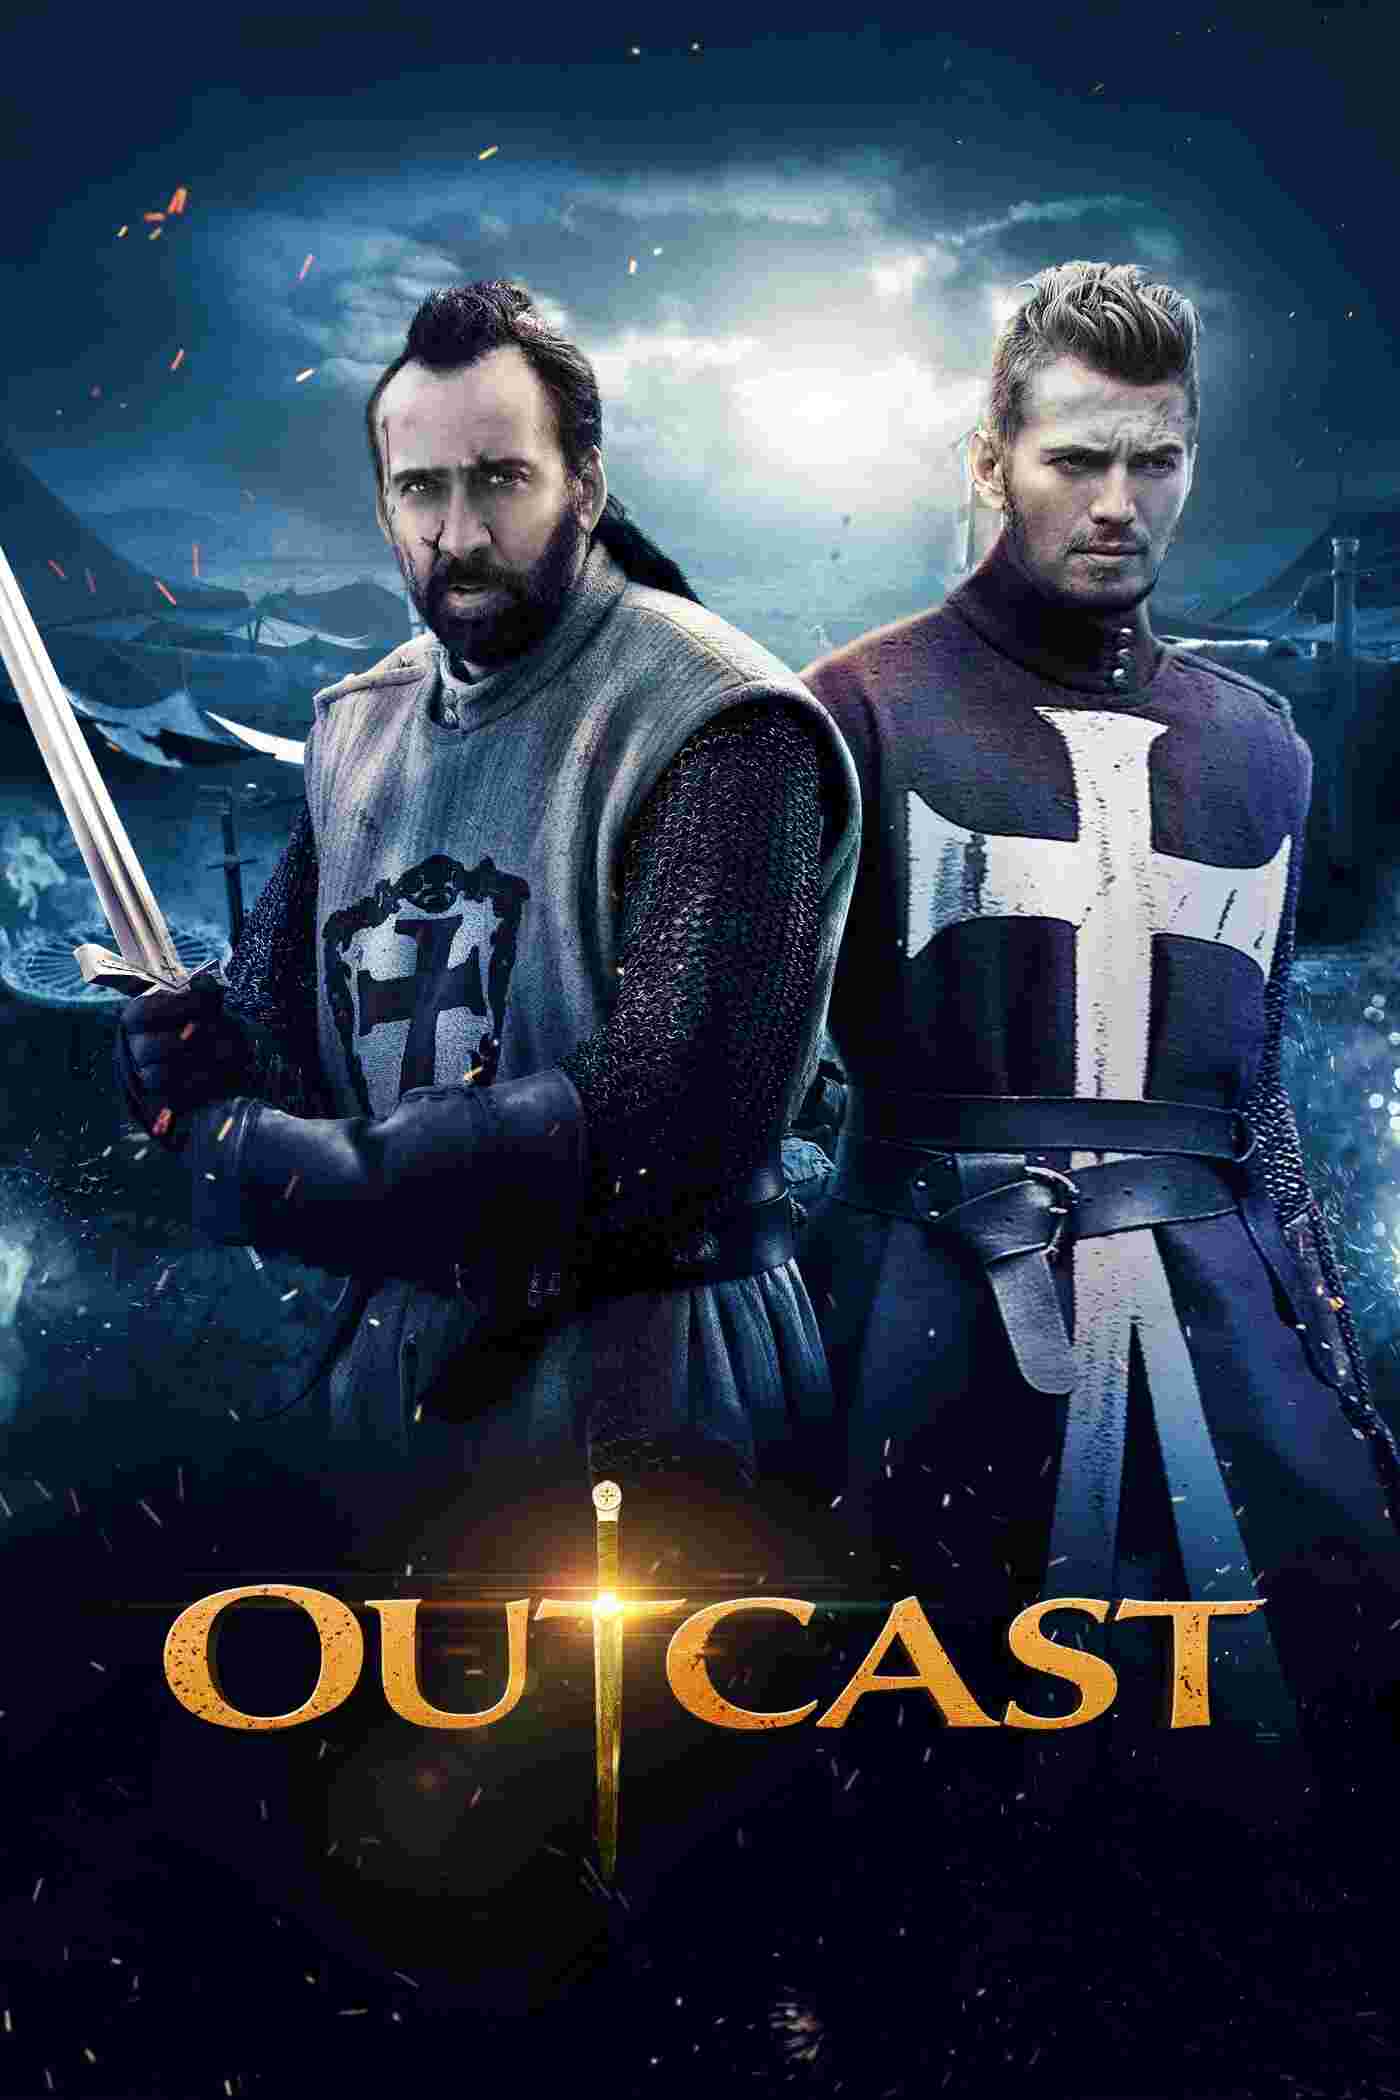 Outcast (2014) Nicolas Cage